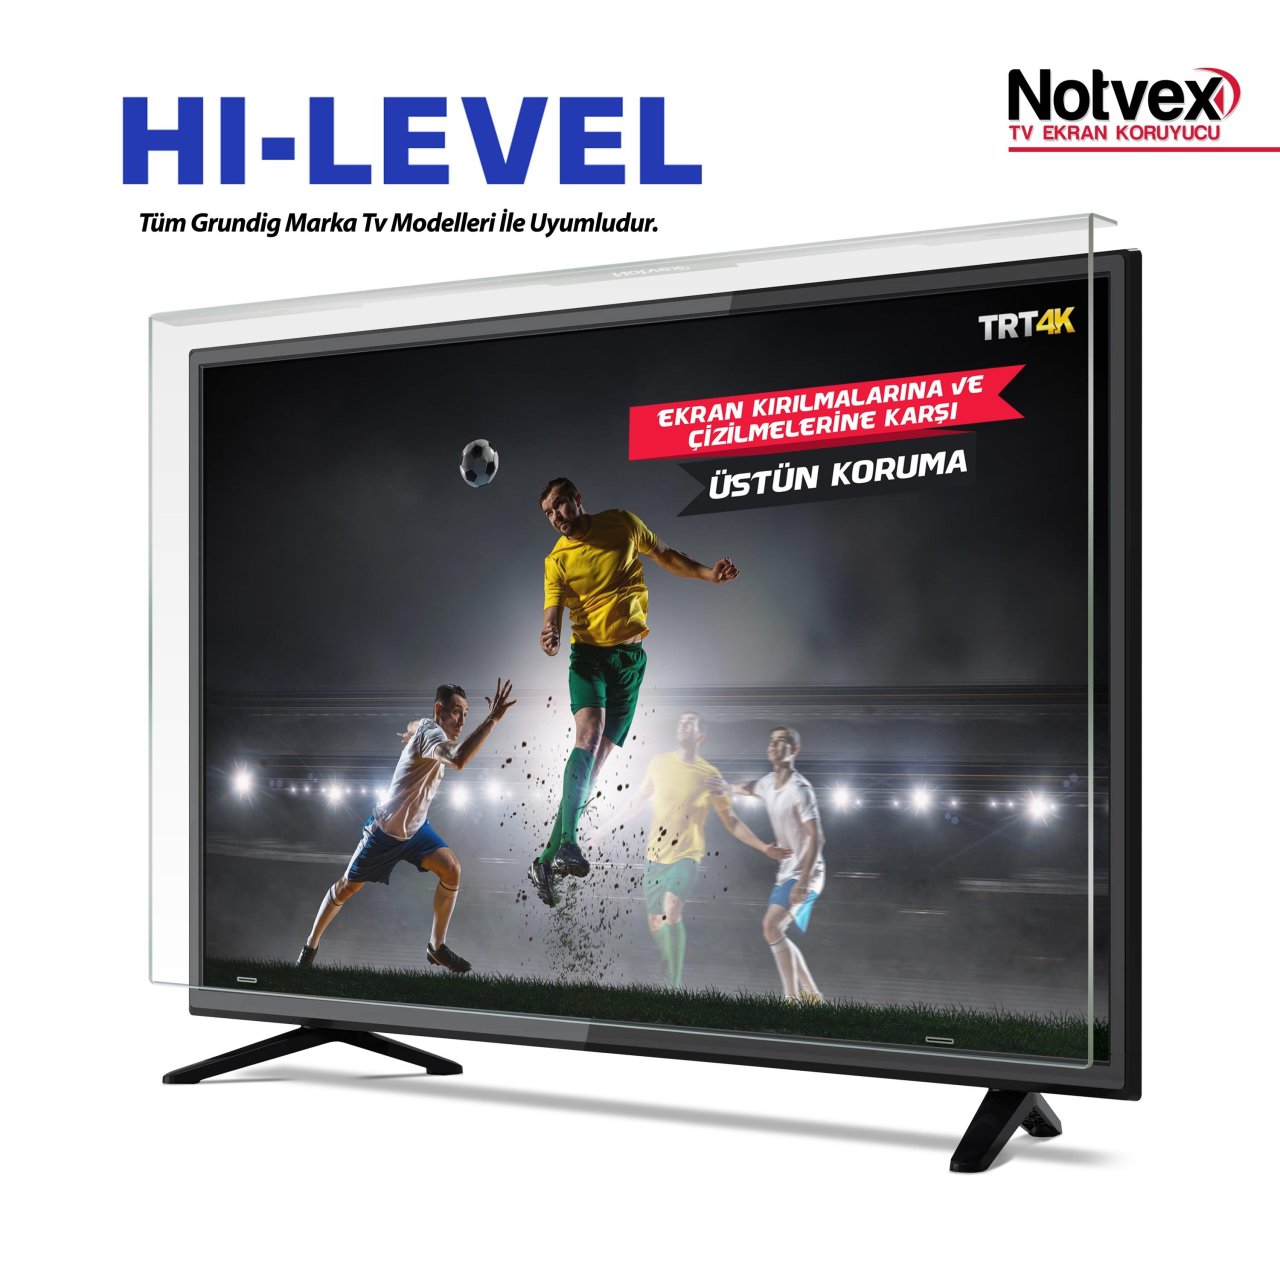 Hi-Level 49HL550 Uyumlu TV Ekran Koruyucu